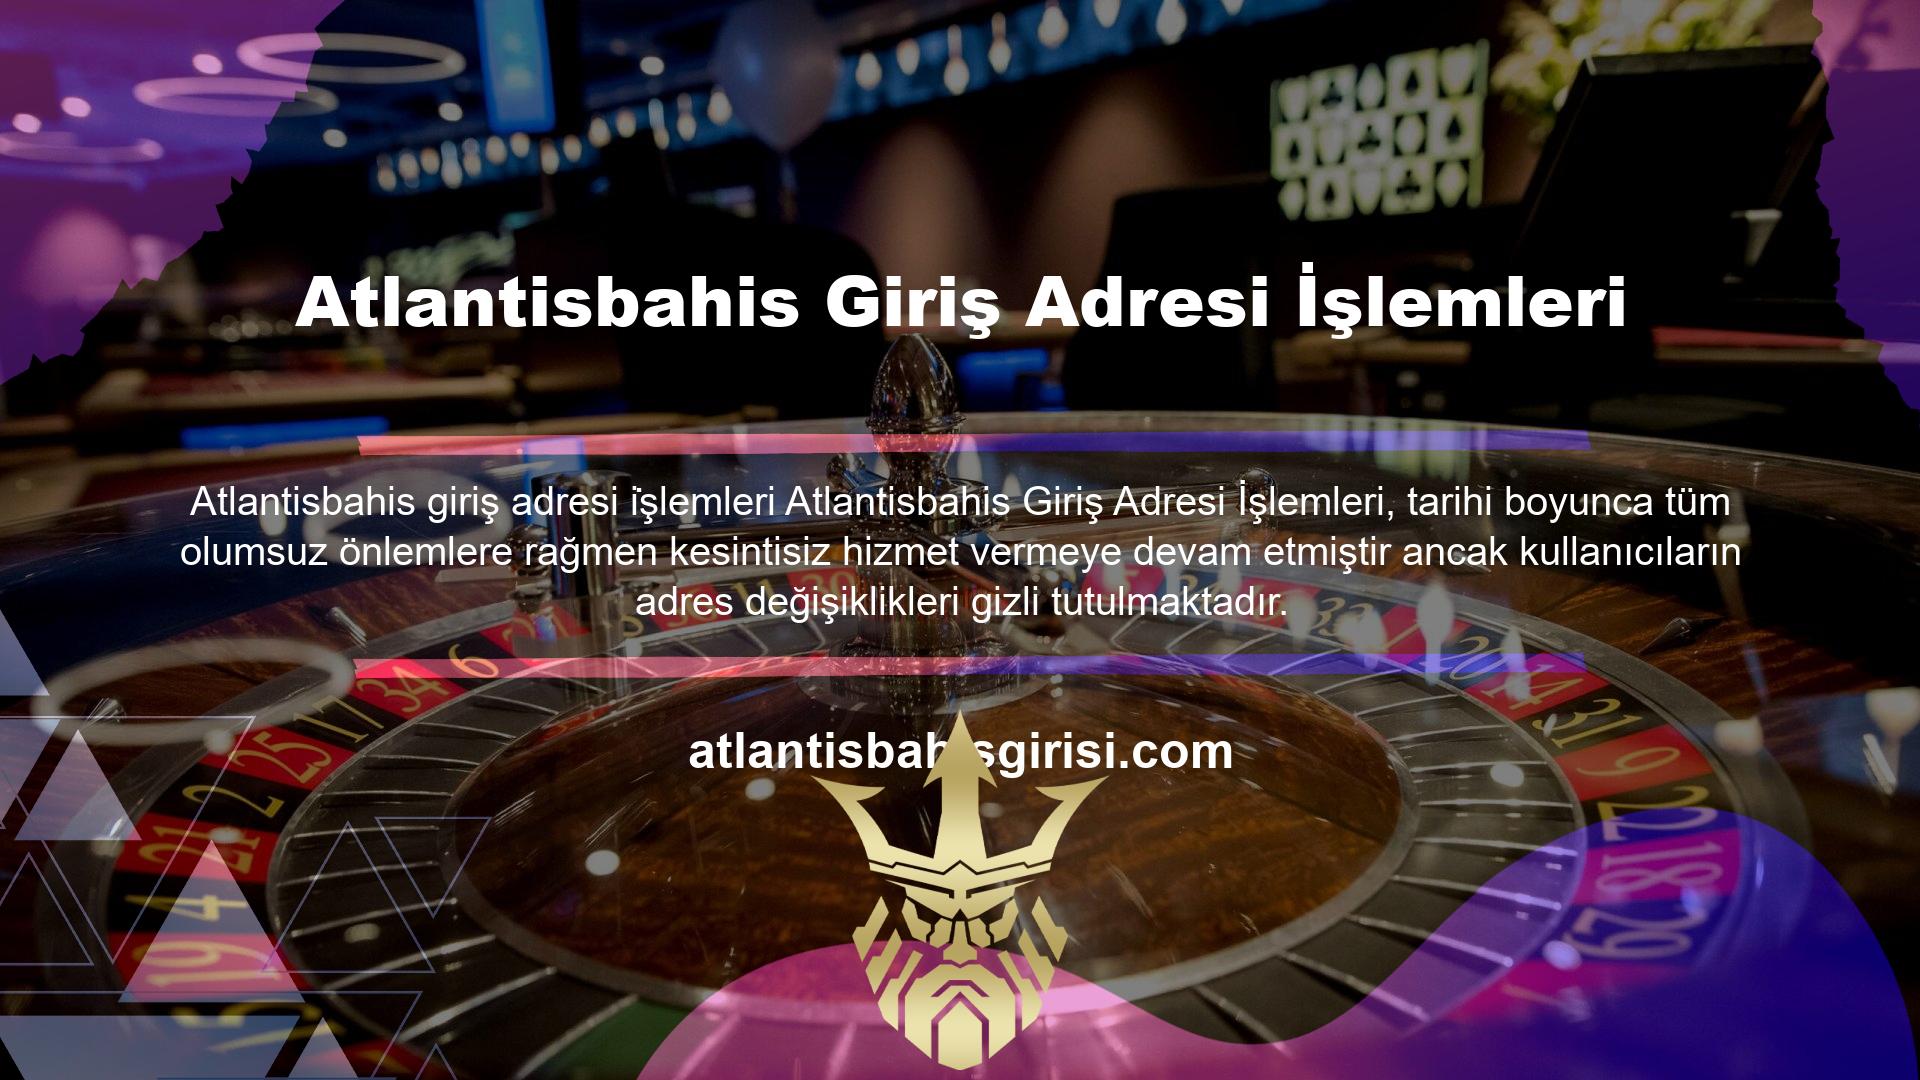 Atlantisbahis numara aralığındaki tüm adresler Atlantisbahis sitesine ait olup, kullanılan adresler bloke edilmiş ve değiştirilmiştir ve Atlantisbahis ile hiçbir ilgisi yoktur